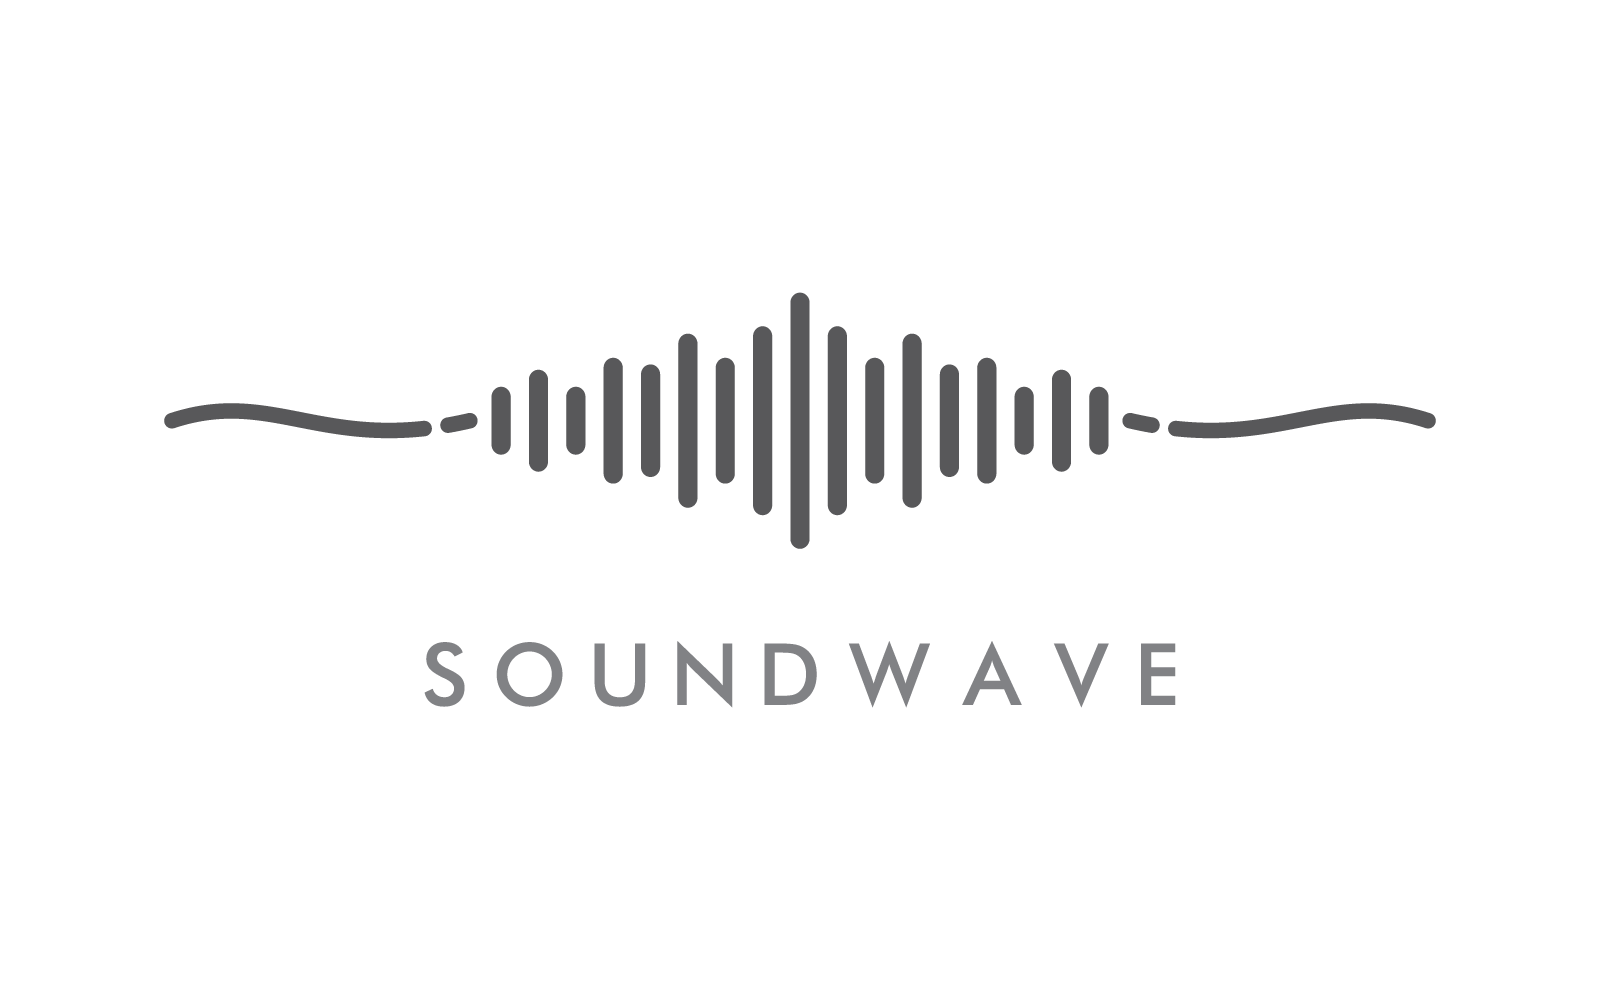 Звуковая волна музыка логотип вектор значок плоский дизайн